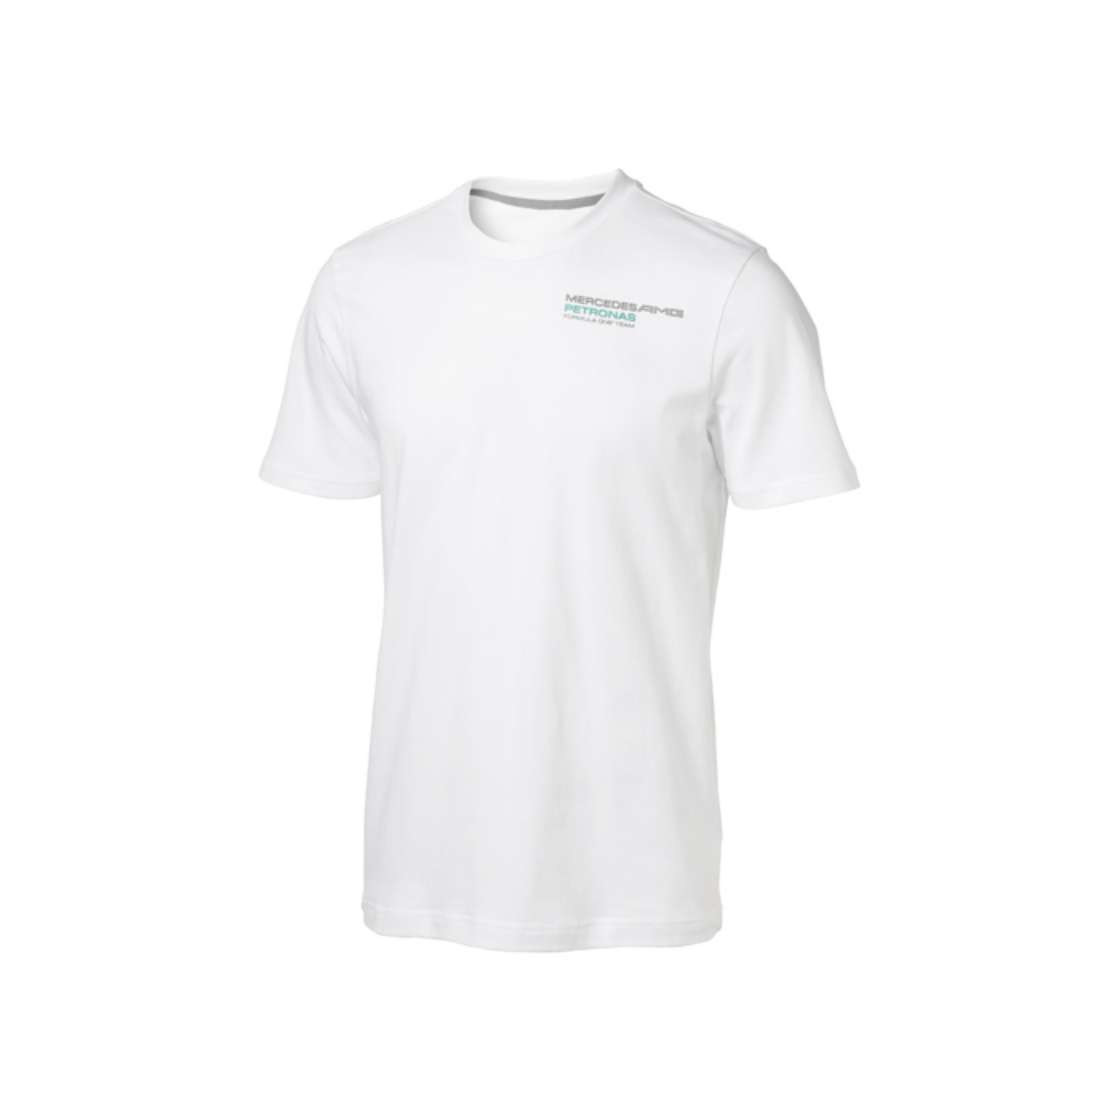 Mercedes BENZ Motor Sport Herren Artikel Bedruckt Fan Bekleidung T-shirt Weiß 